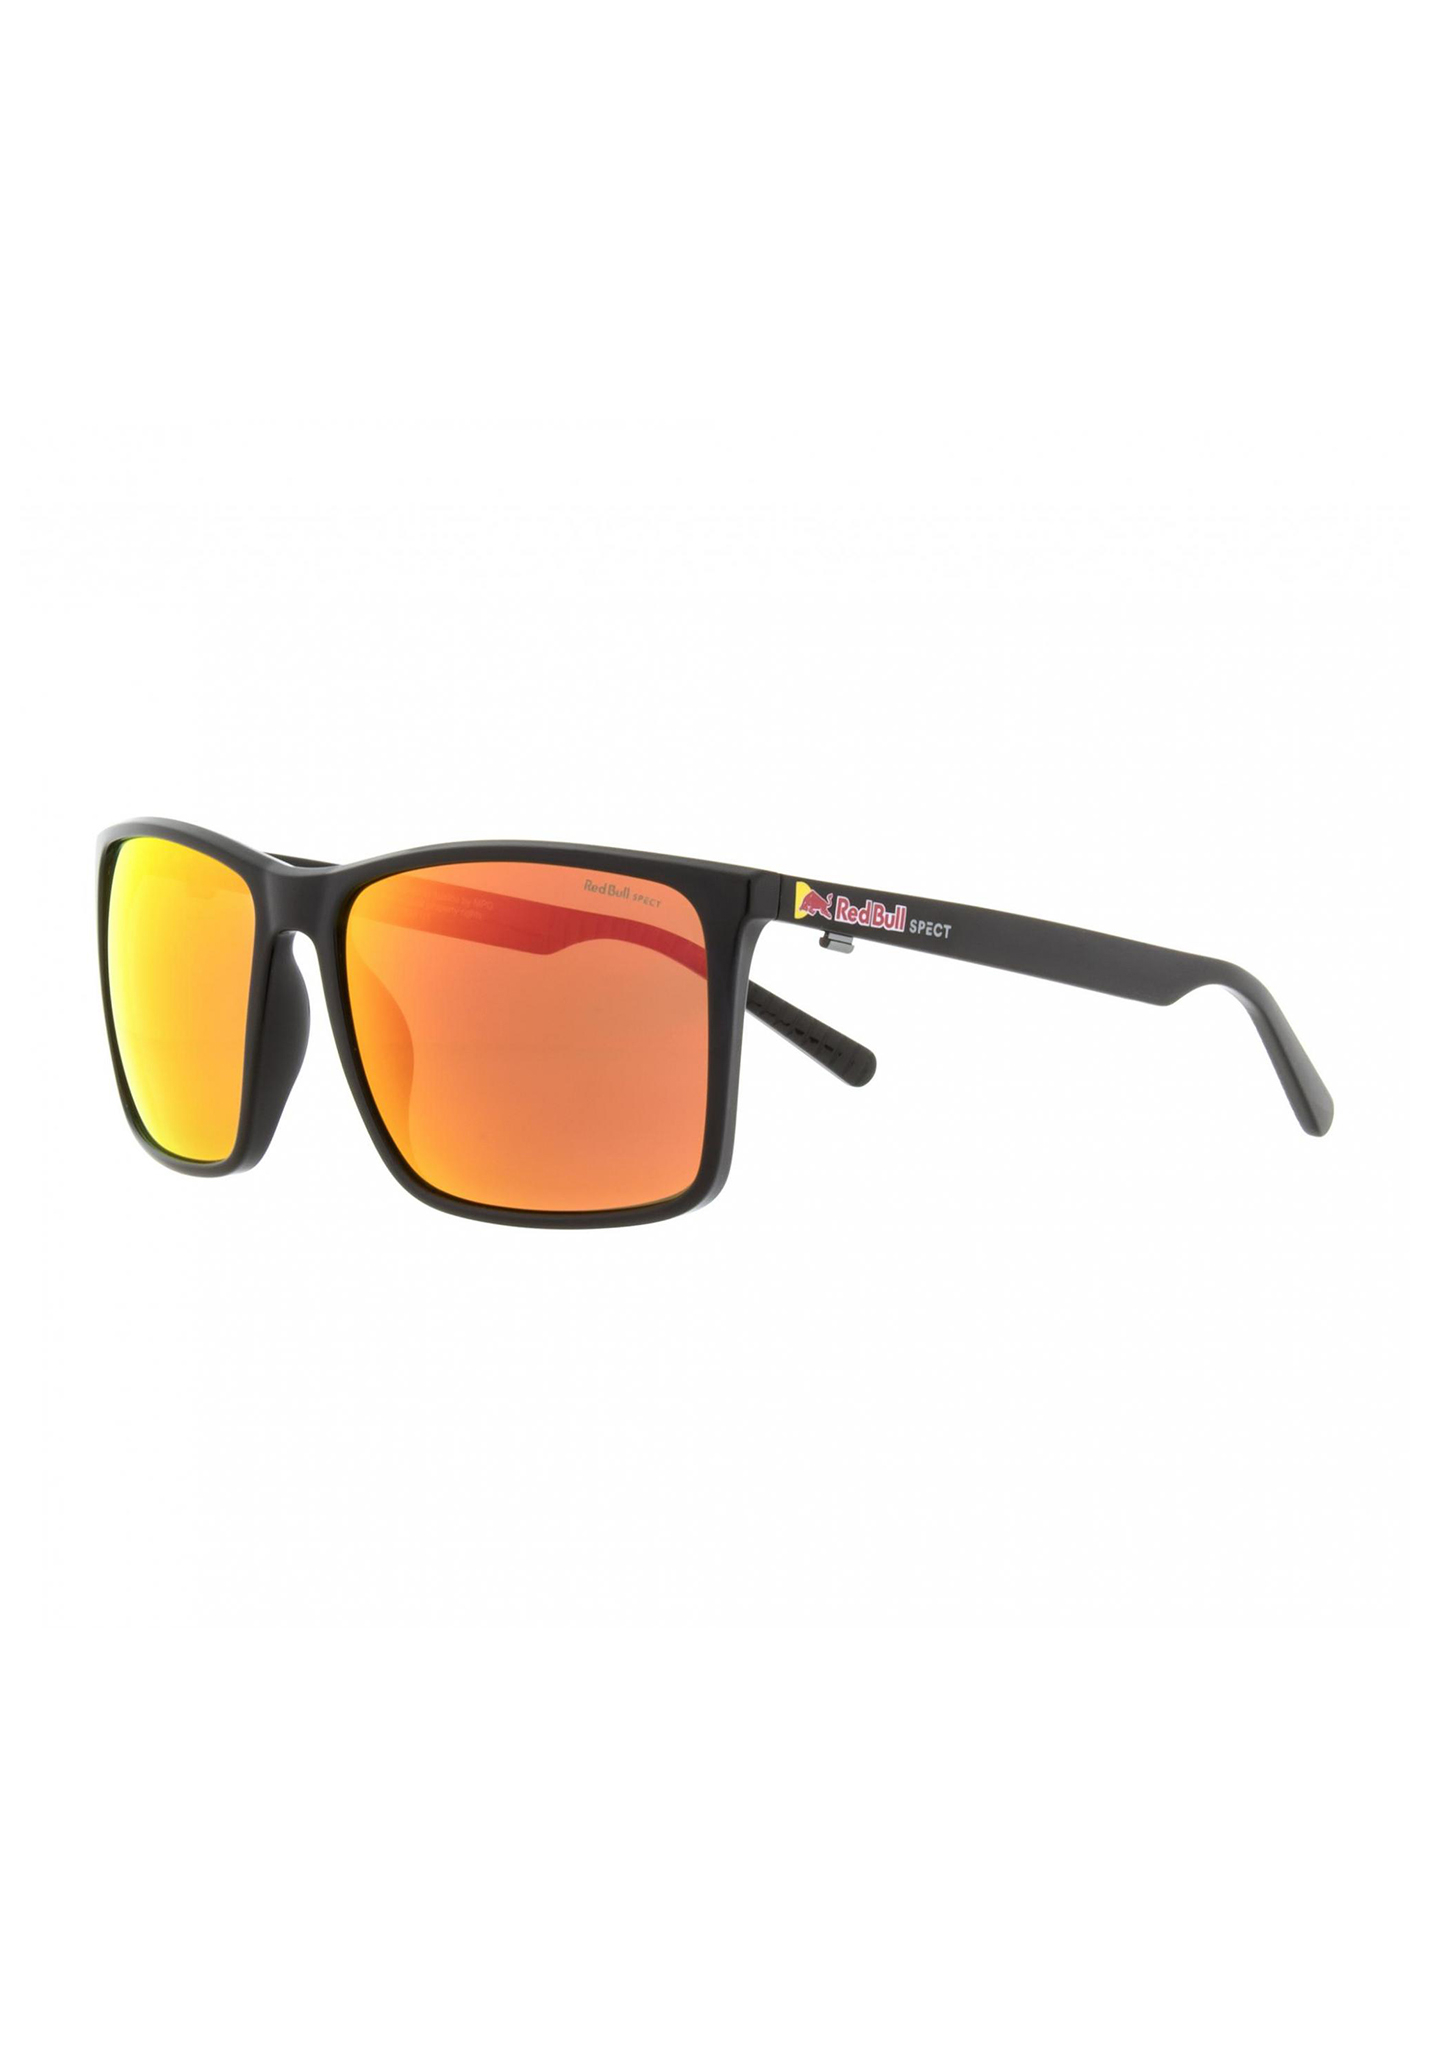 Red Bull SPECT Eyewear Bow Sonnenbrillen schwarz/braun mit rotem spiegel pol One Size